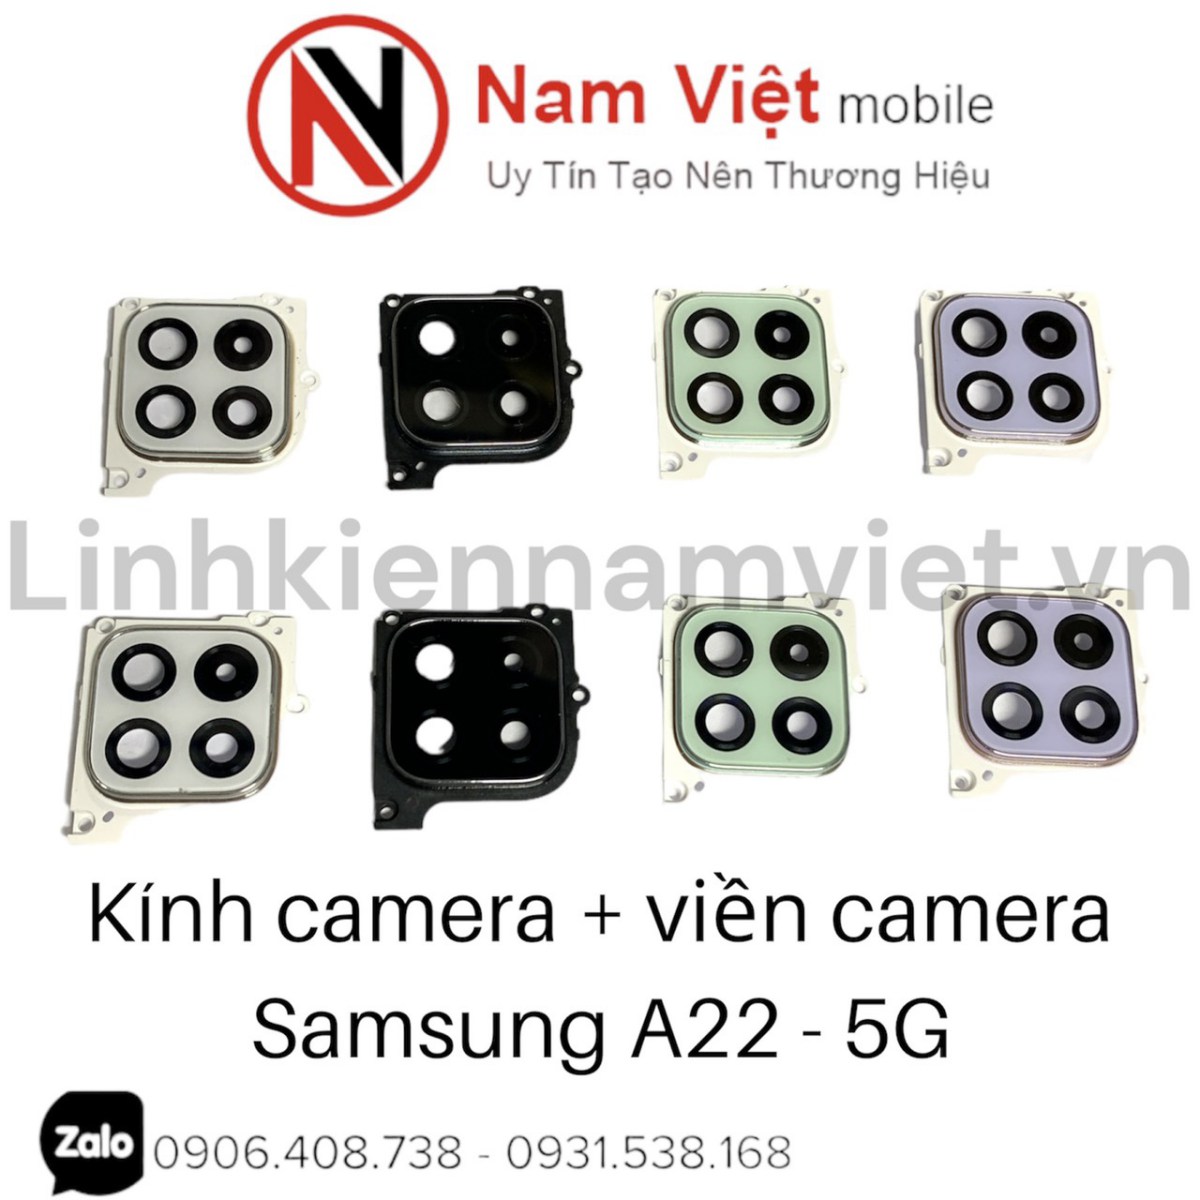 Kính camera + viền camera Samsung A22 - 5G